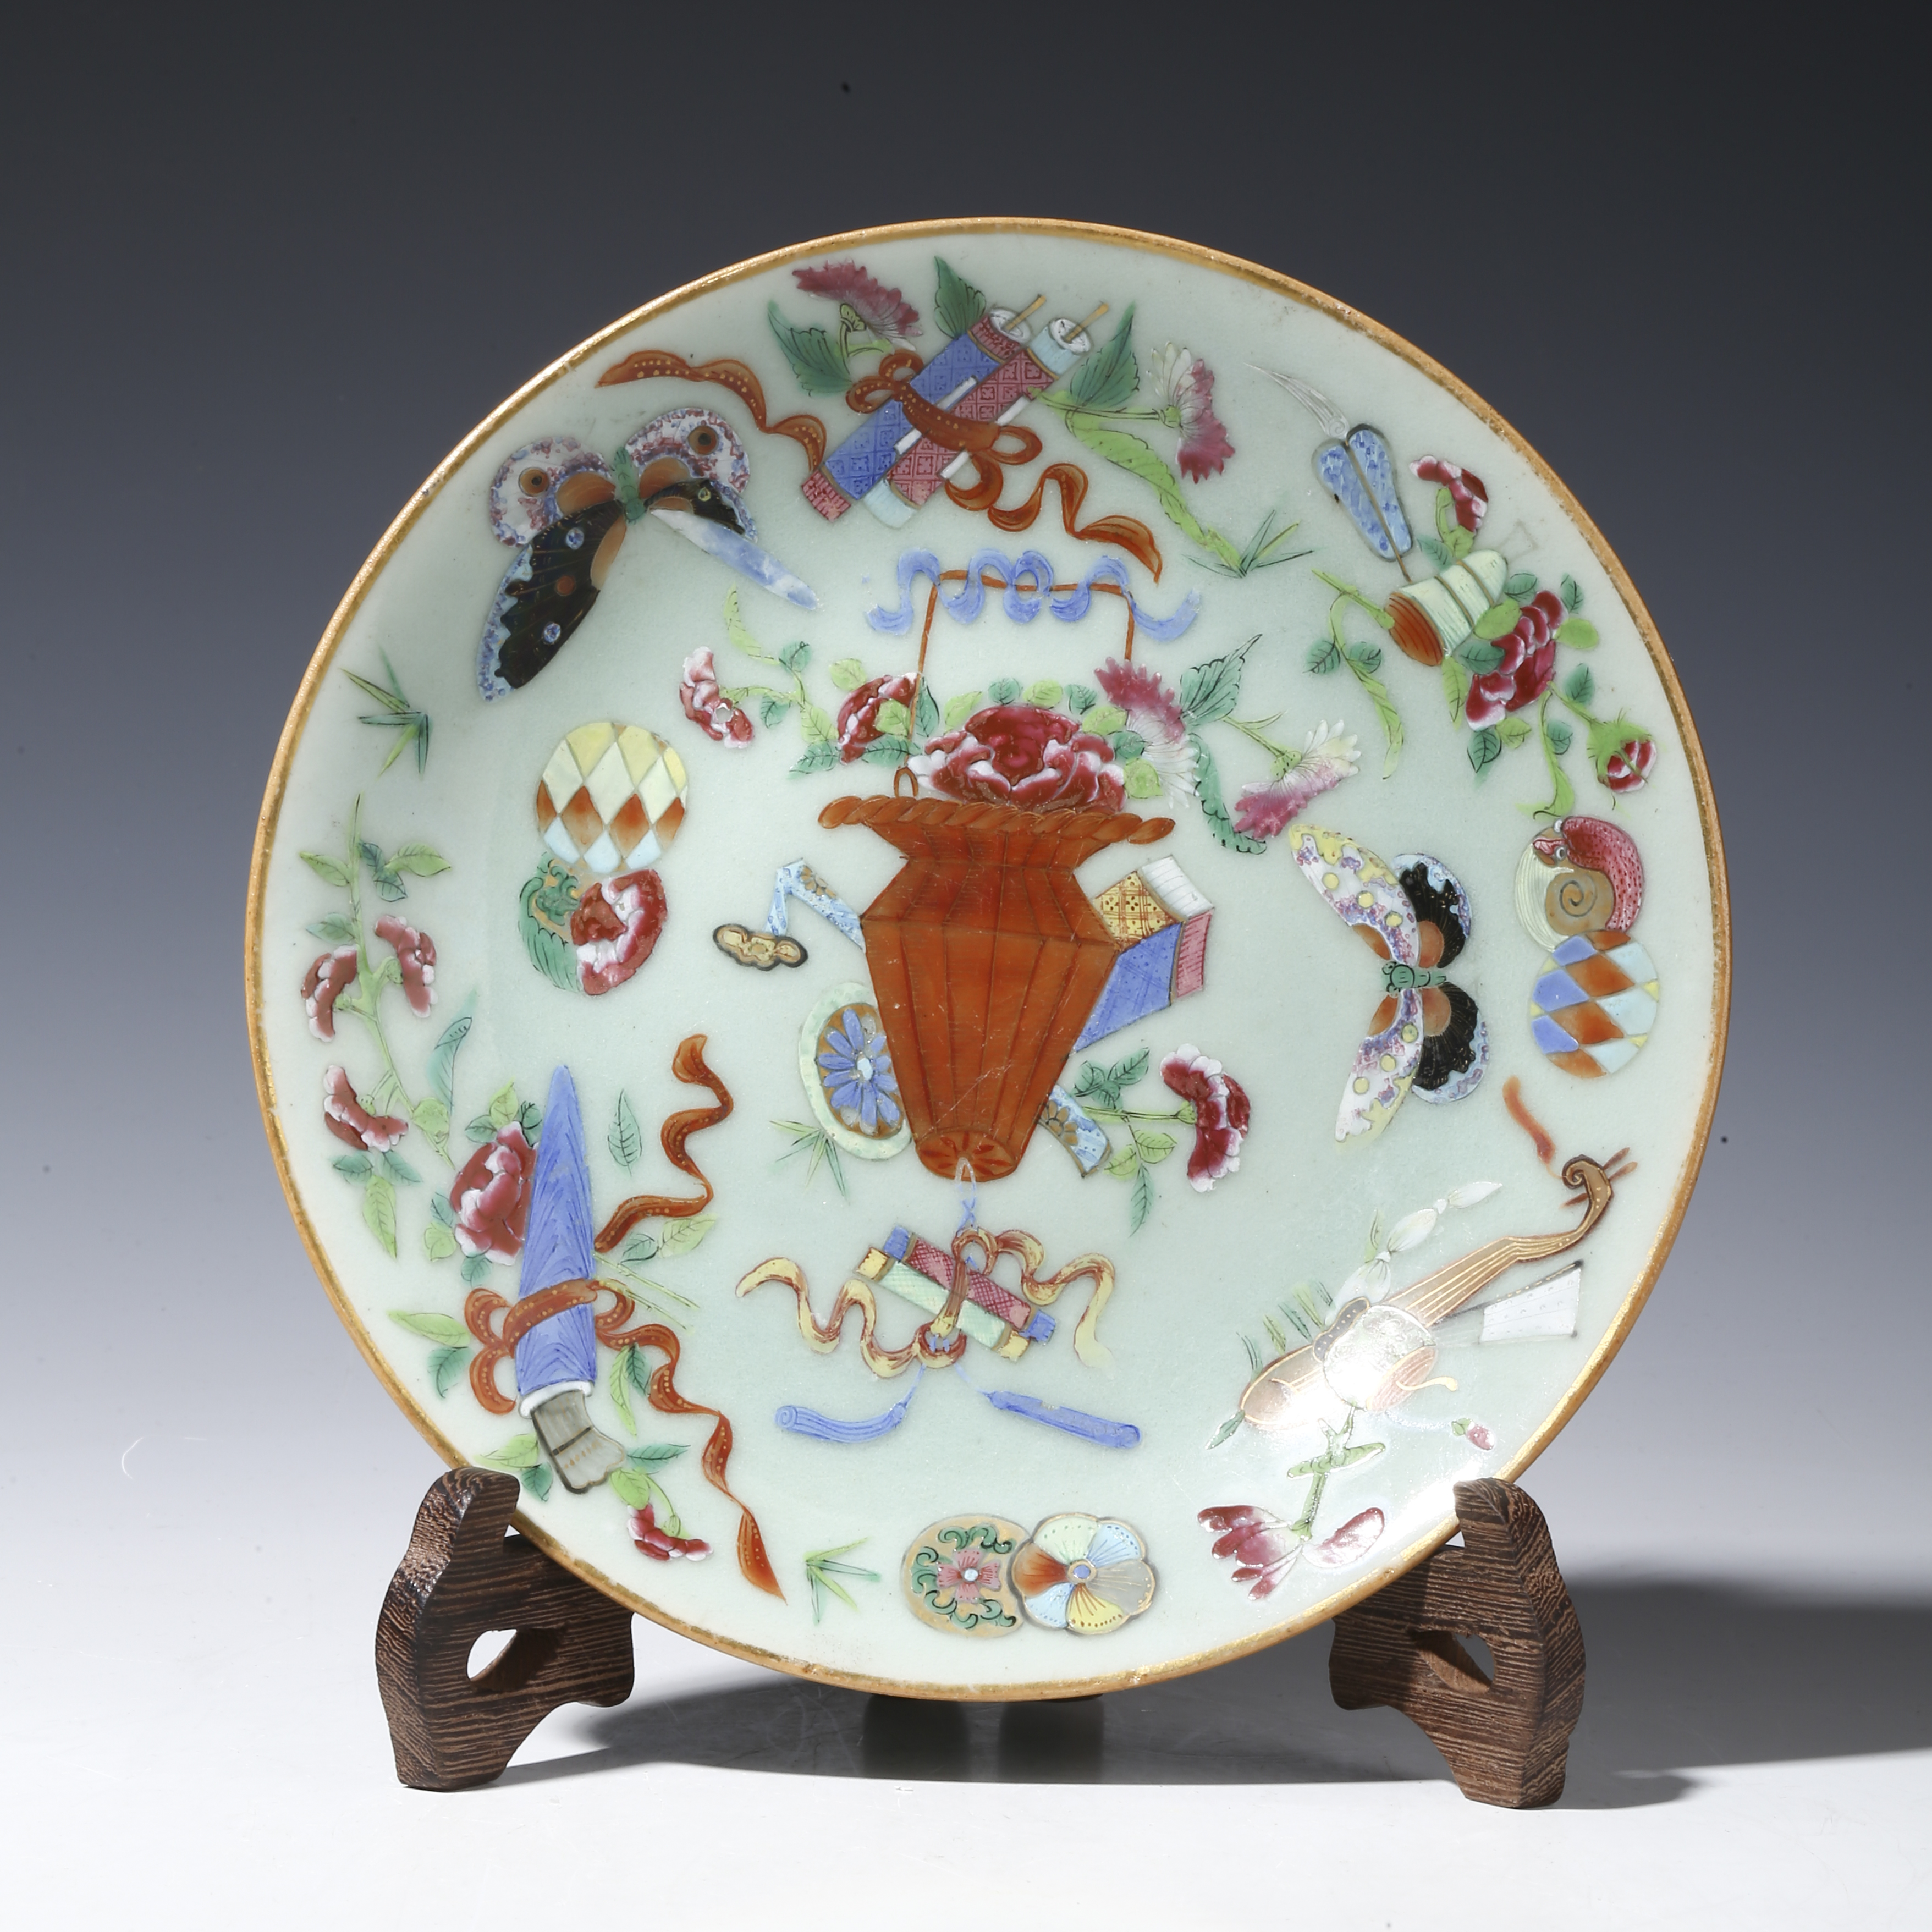 14000円本物値段格安販売中中国美術古玩粉彩花卉紋樣皿美術品茶道具